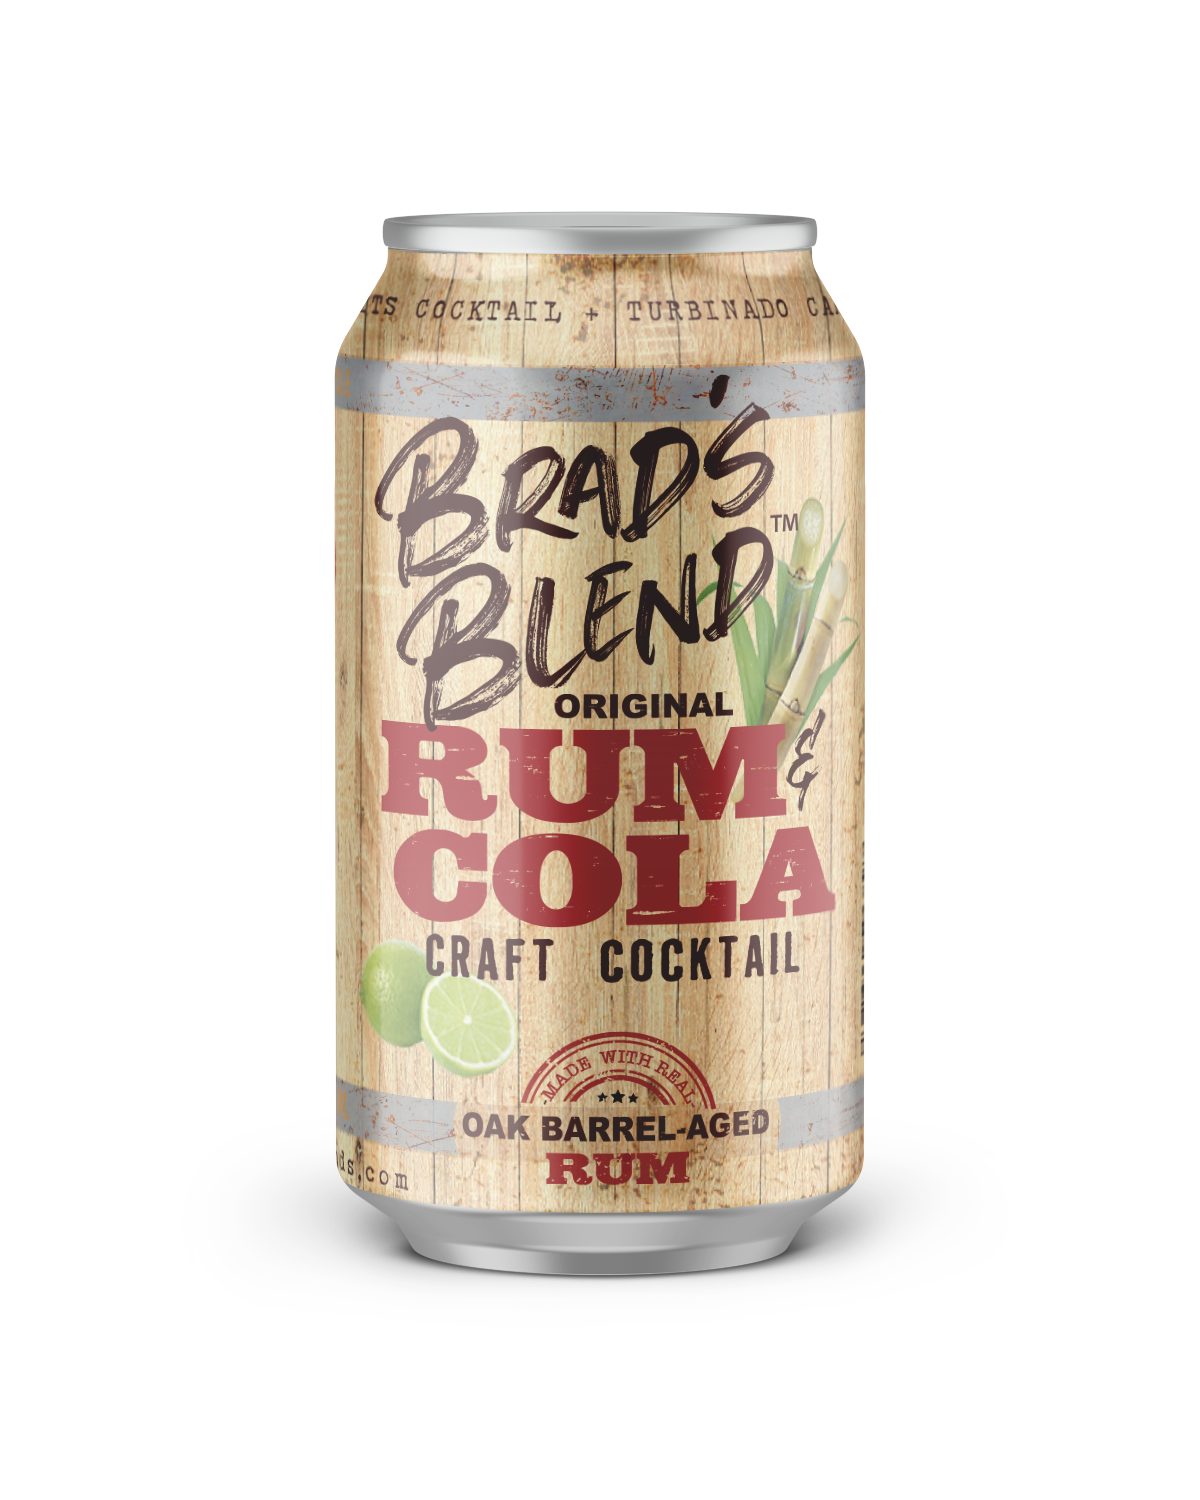 Brad's Original Blend of Rum & Cola